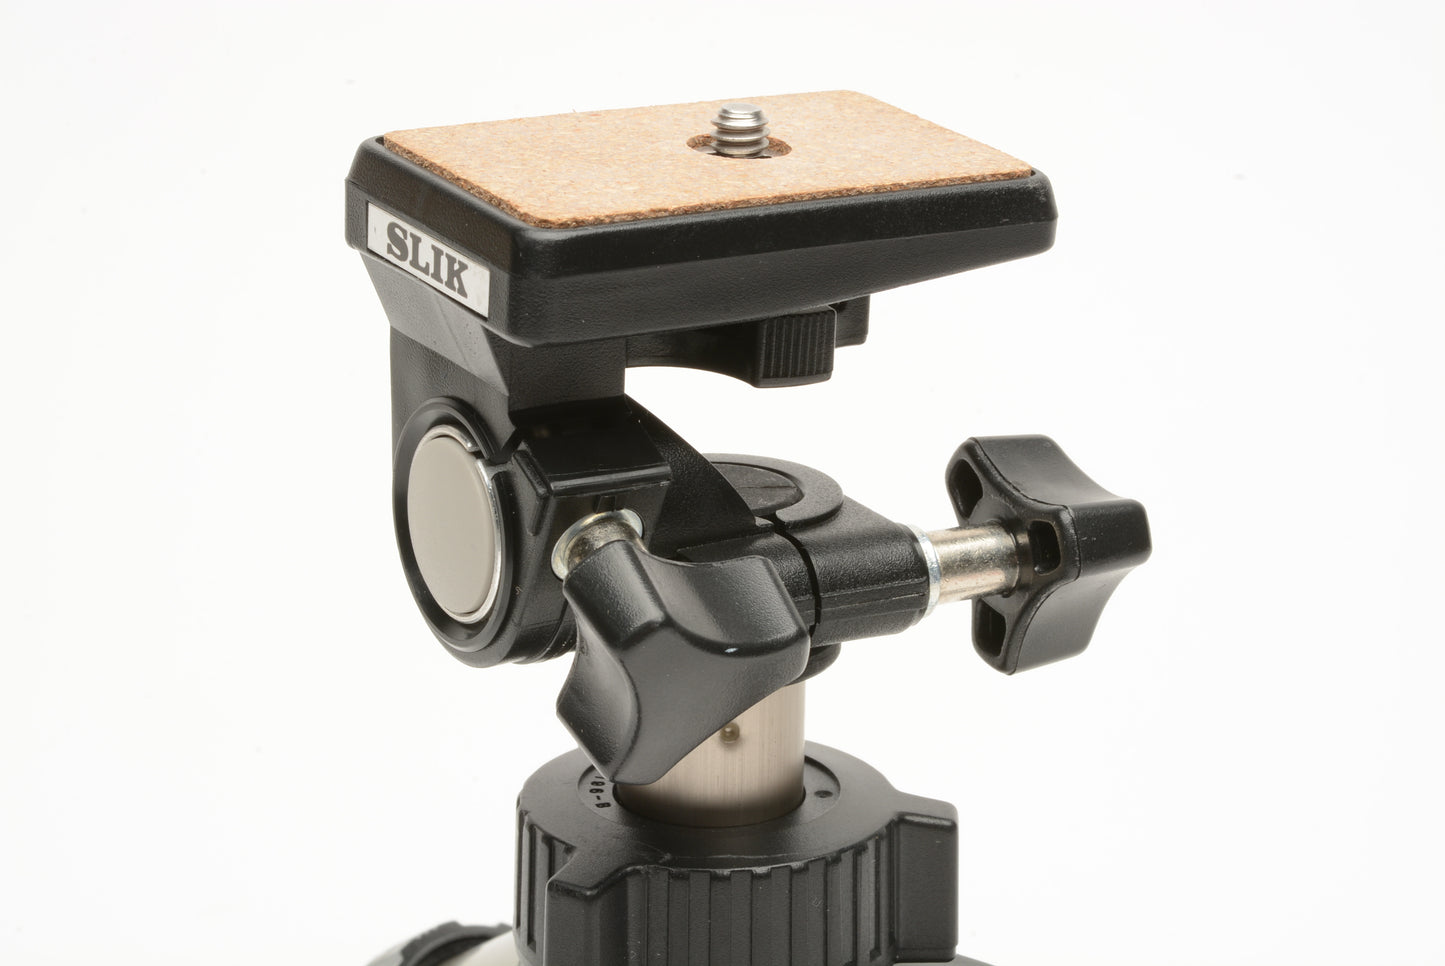 Slik Mini Still digital camera stand tripod, Very clean, compact